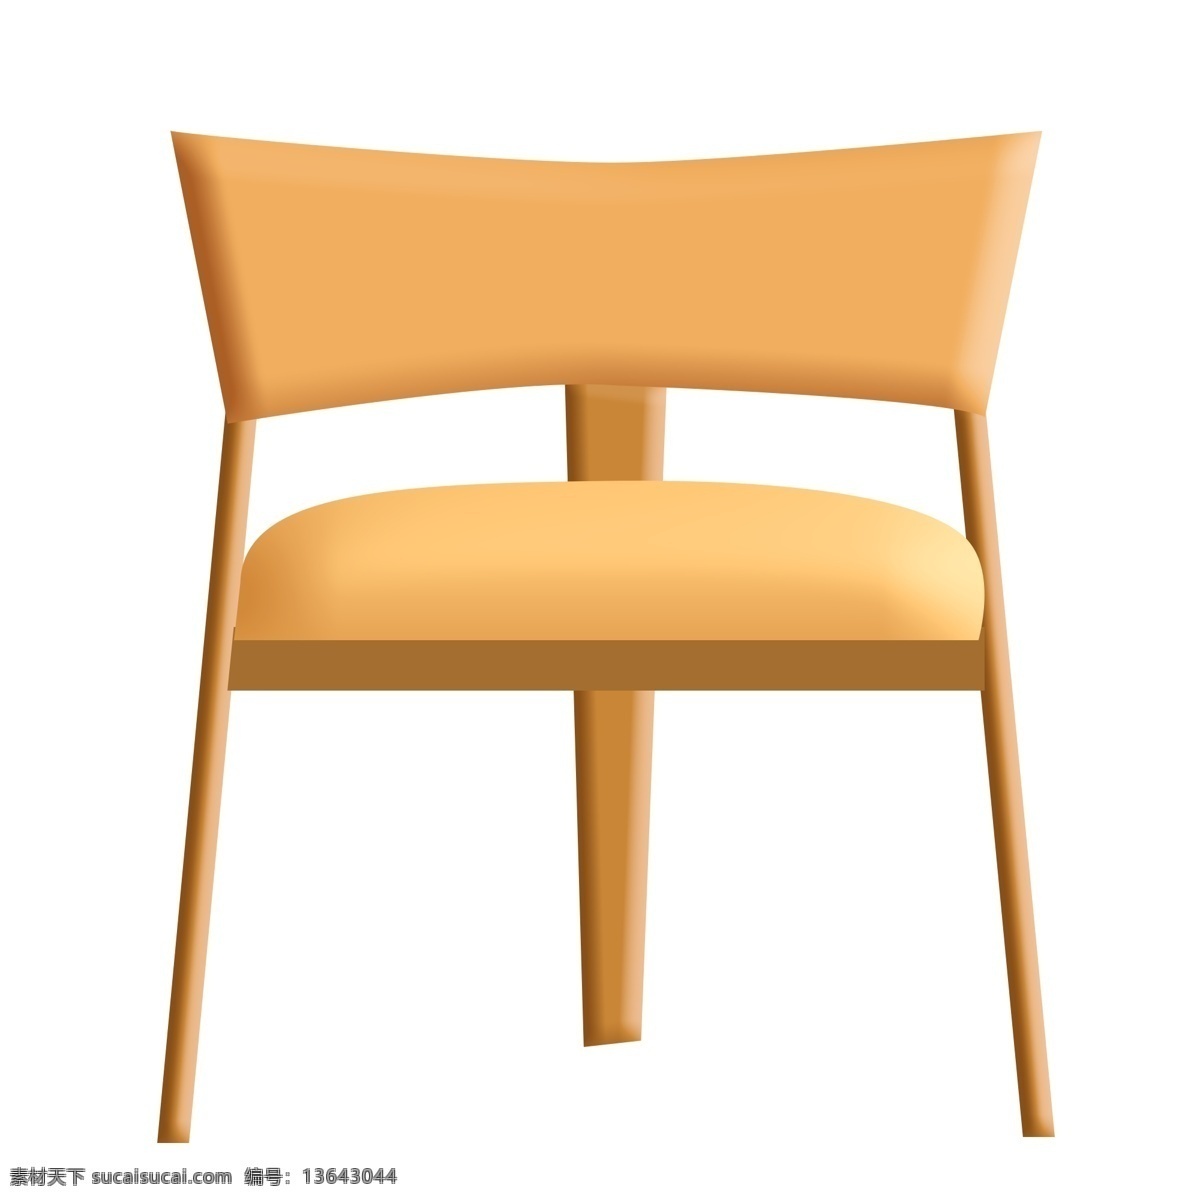 木质 椅子 卡通 插画 木质的椅子 卡通插画 家具插画 椅子插画 家具椅子 座位椅子 黄色的椅子